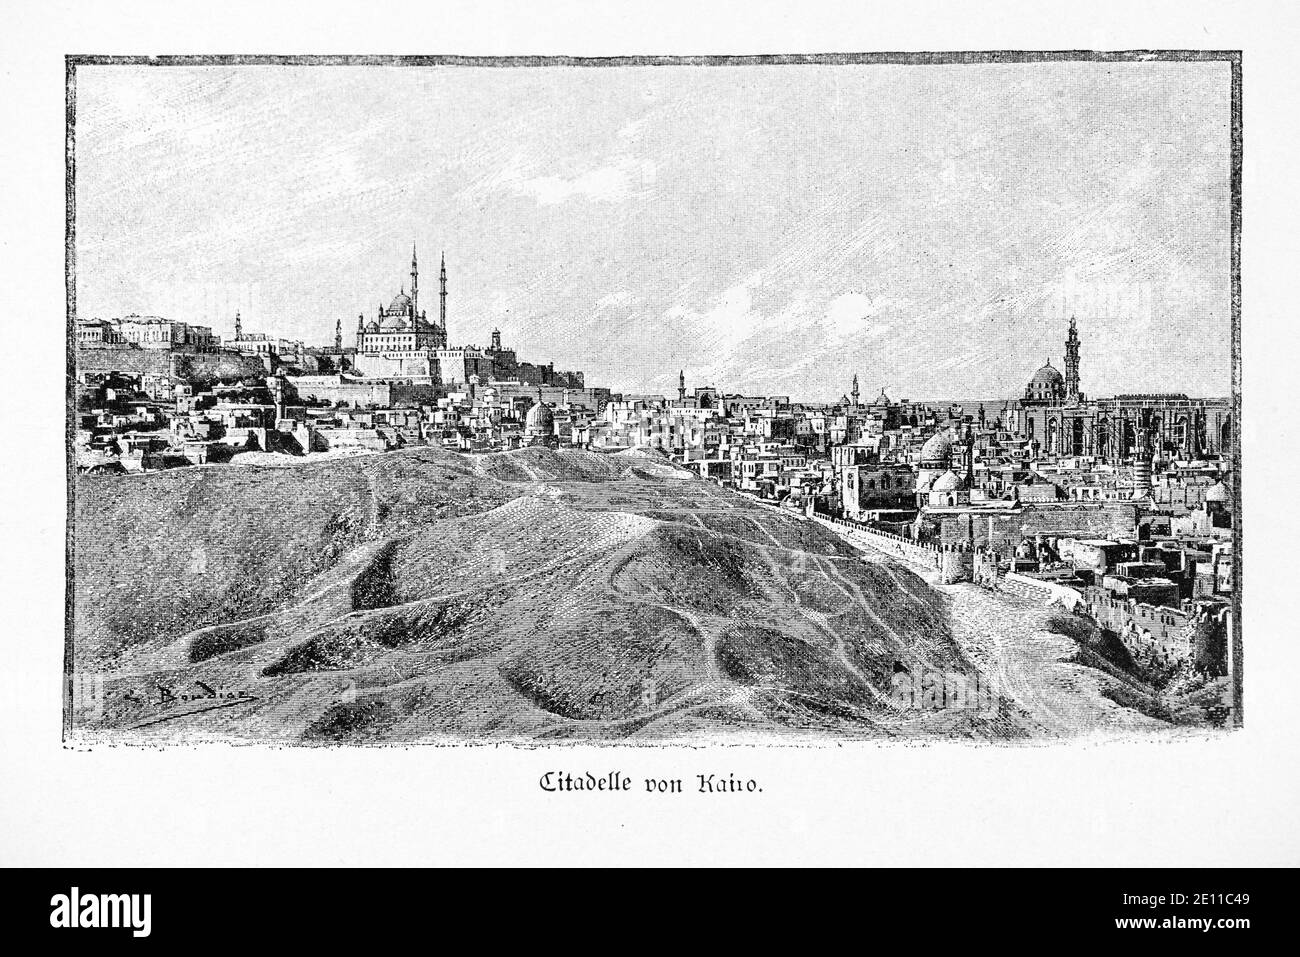 "Citadelle von Kairo", la Cittadella di Kairo su una collina con la città, Kairo, Egitto, illustrazione di "Die Hauptstädte der Welt". Breslau circa 1987 Foto Stock